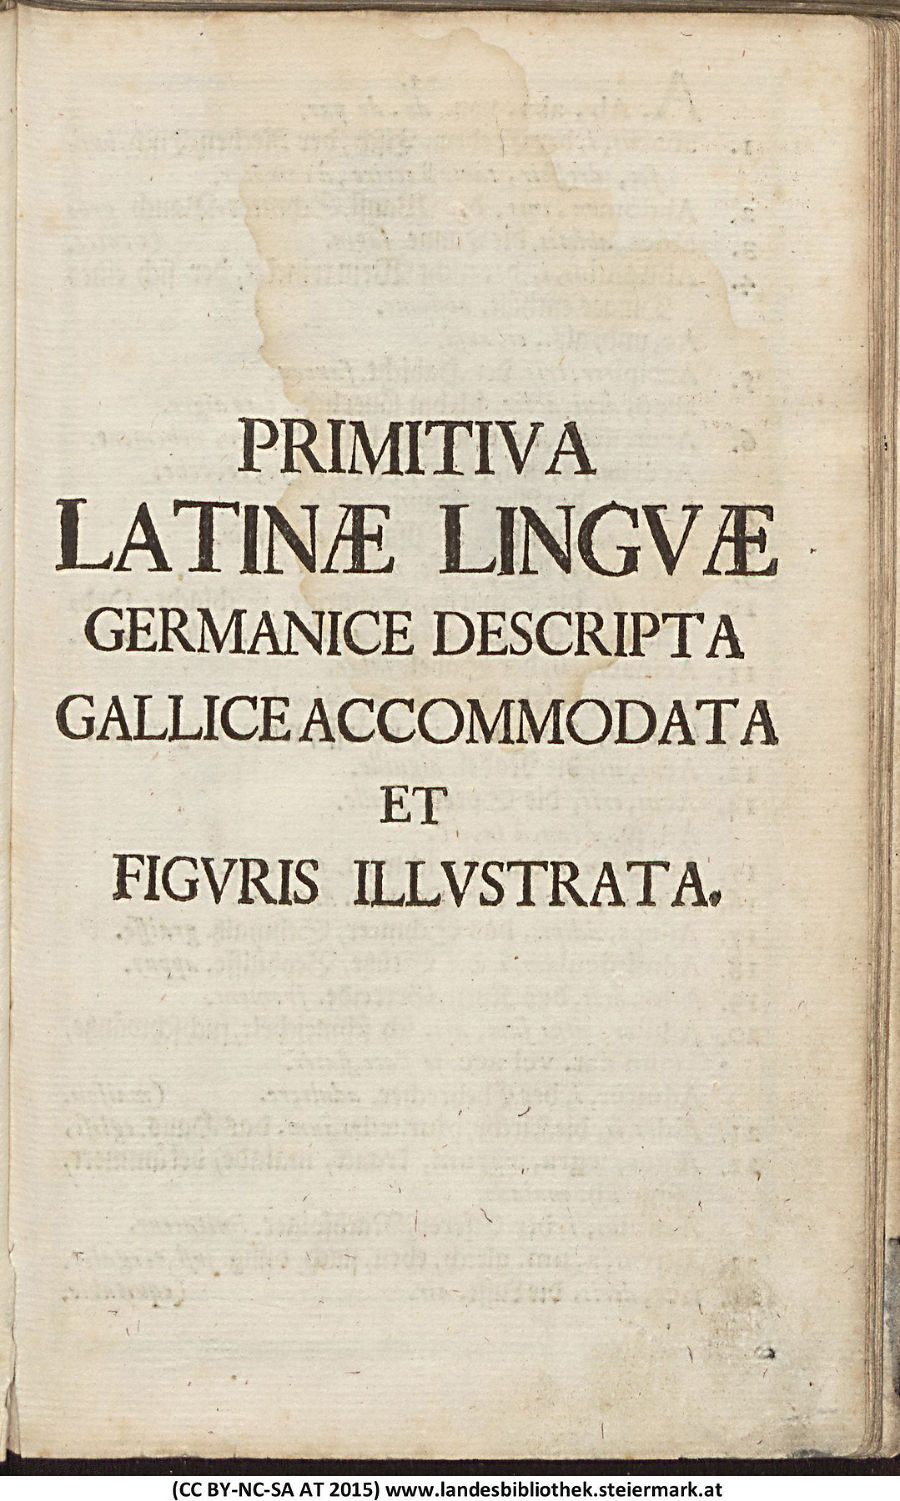 Lateinisches Wörterbuch - Primitiva Latinae Linguae